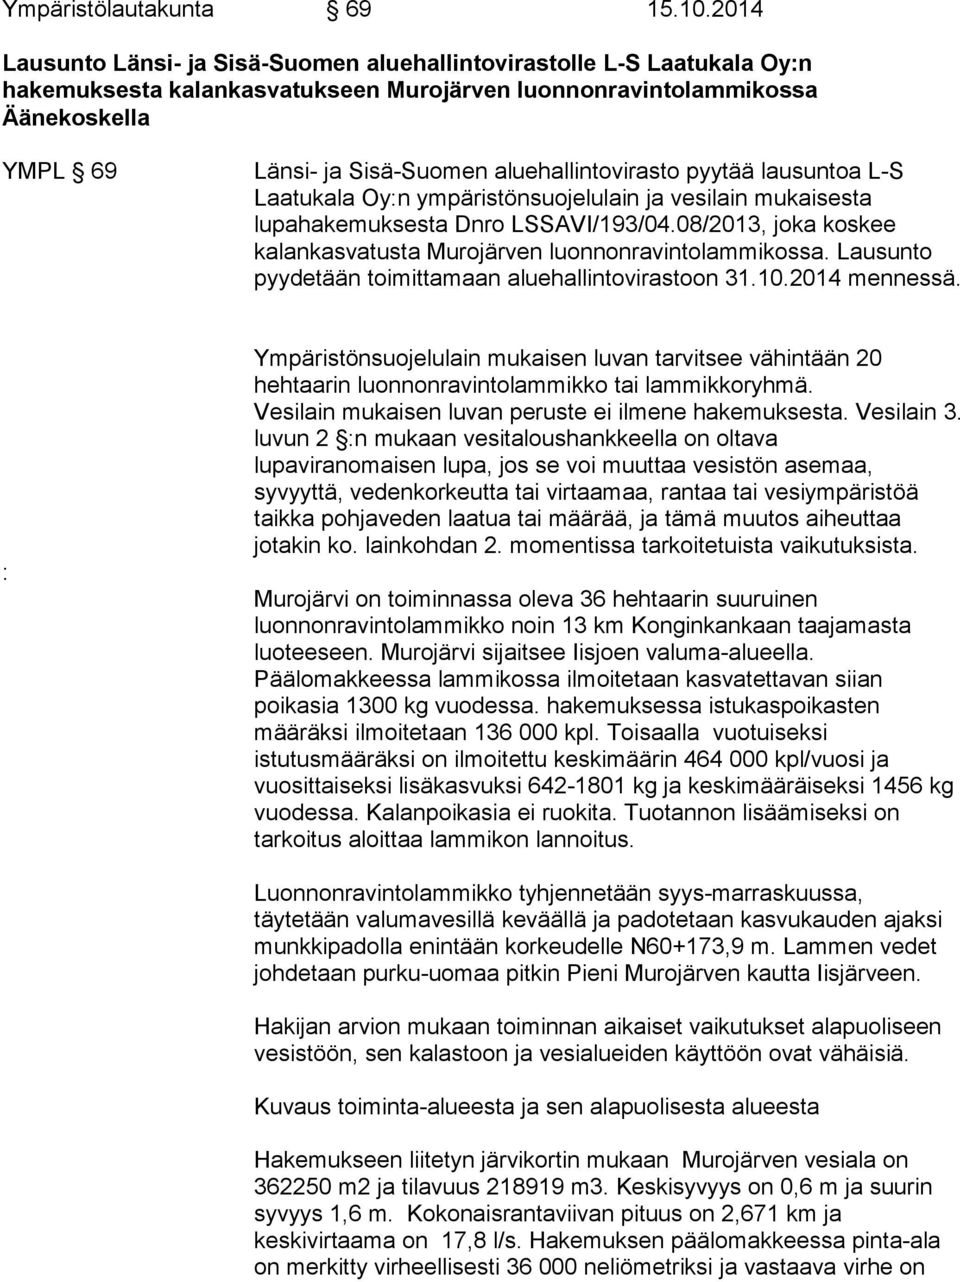 aluehallintovirasto pyytää lausuntoa L-S Laatukala Oy:n ympäristönsuojelulain ja vesilain mukaisesta lupahakemuksesta Dnro LSSAVI/193/04.